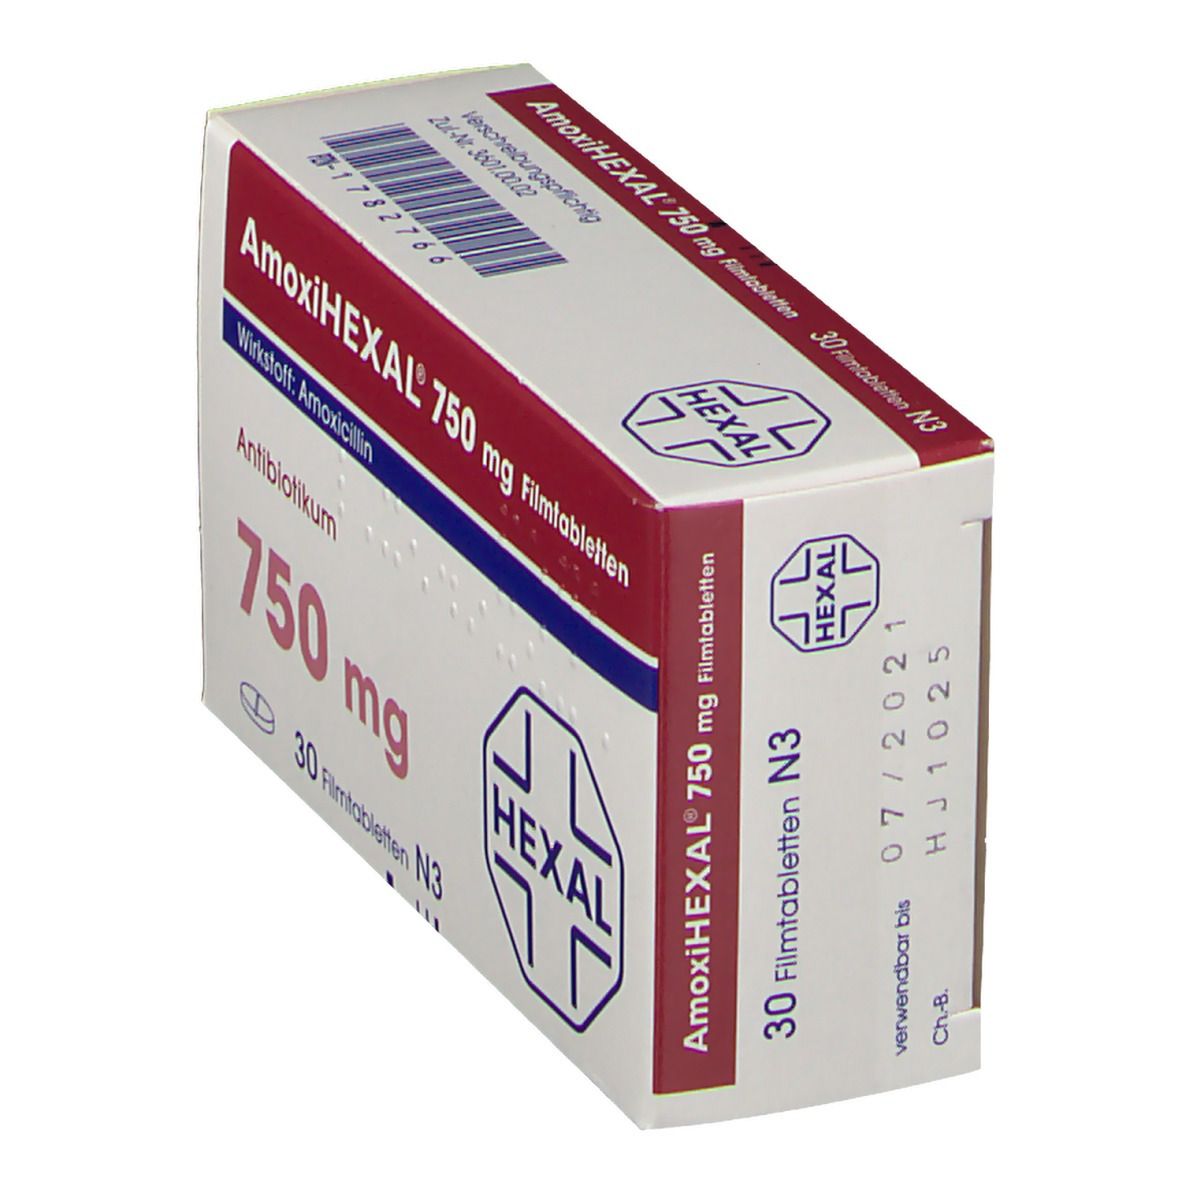 AmoxiHEXAL® 750 mg